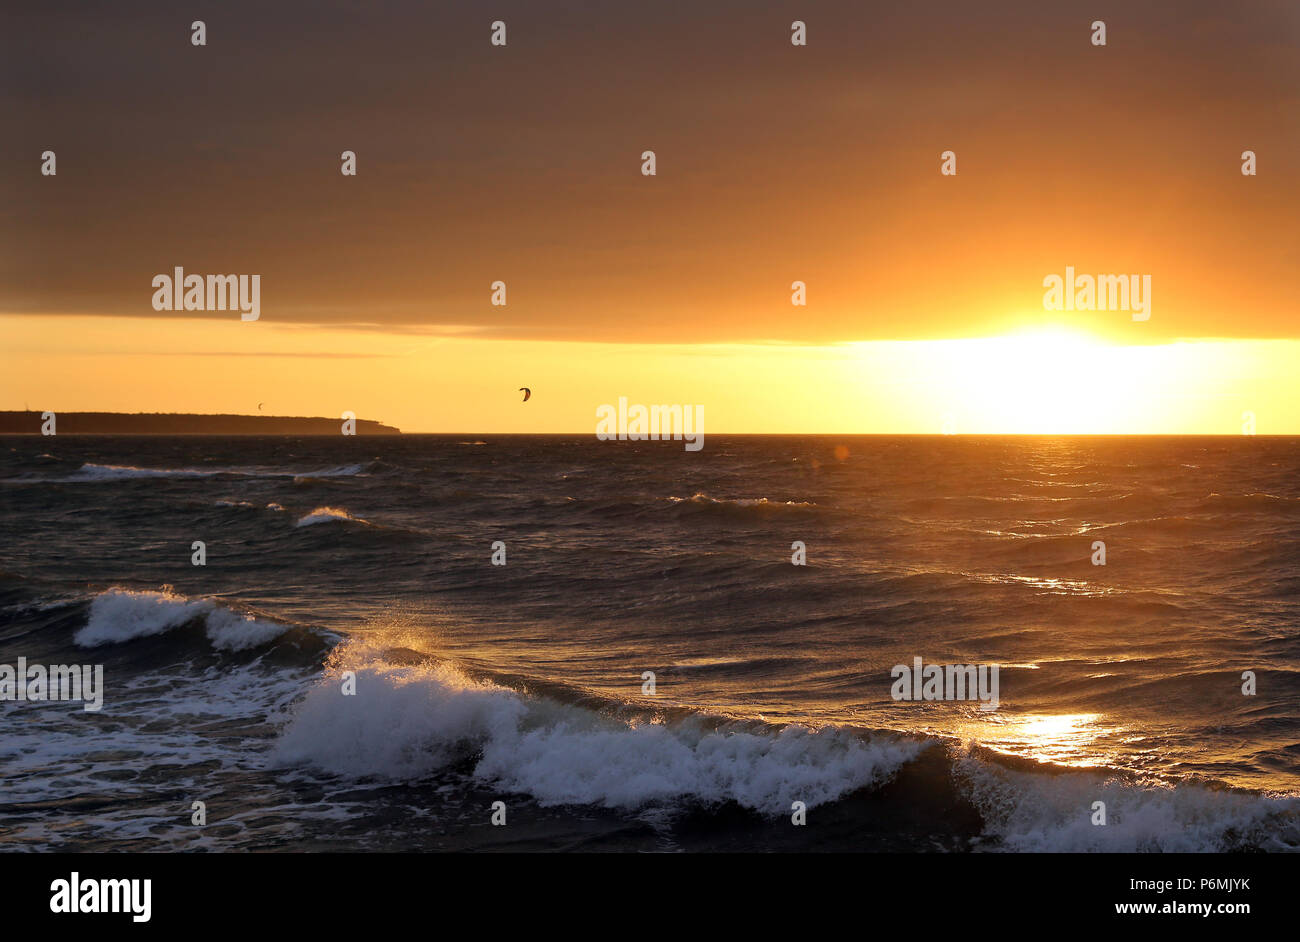 Warnemuende, coucher de soleil sur la mer Baltique Banque D'Images